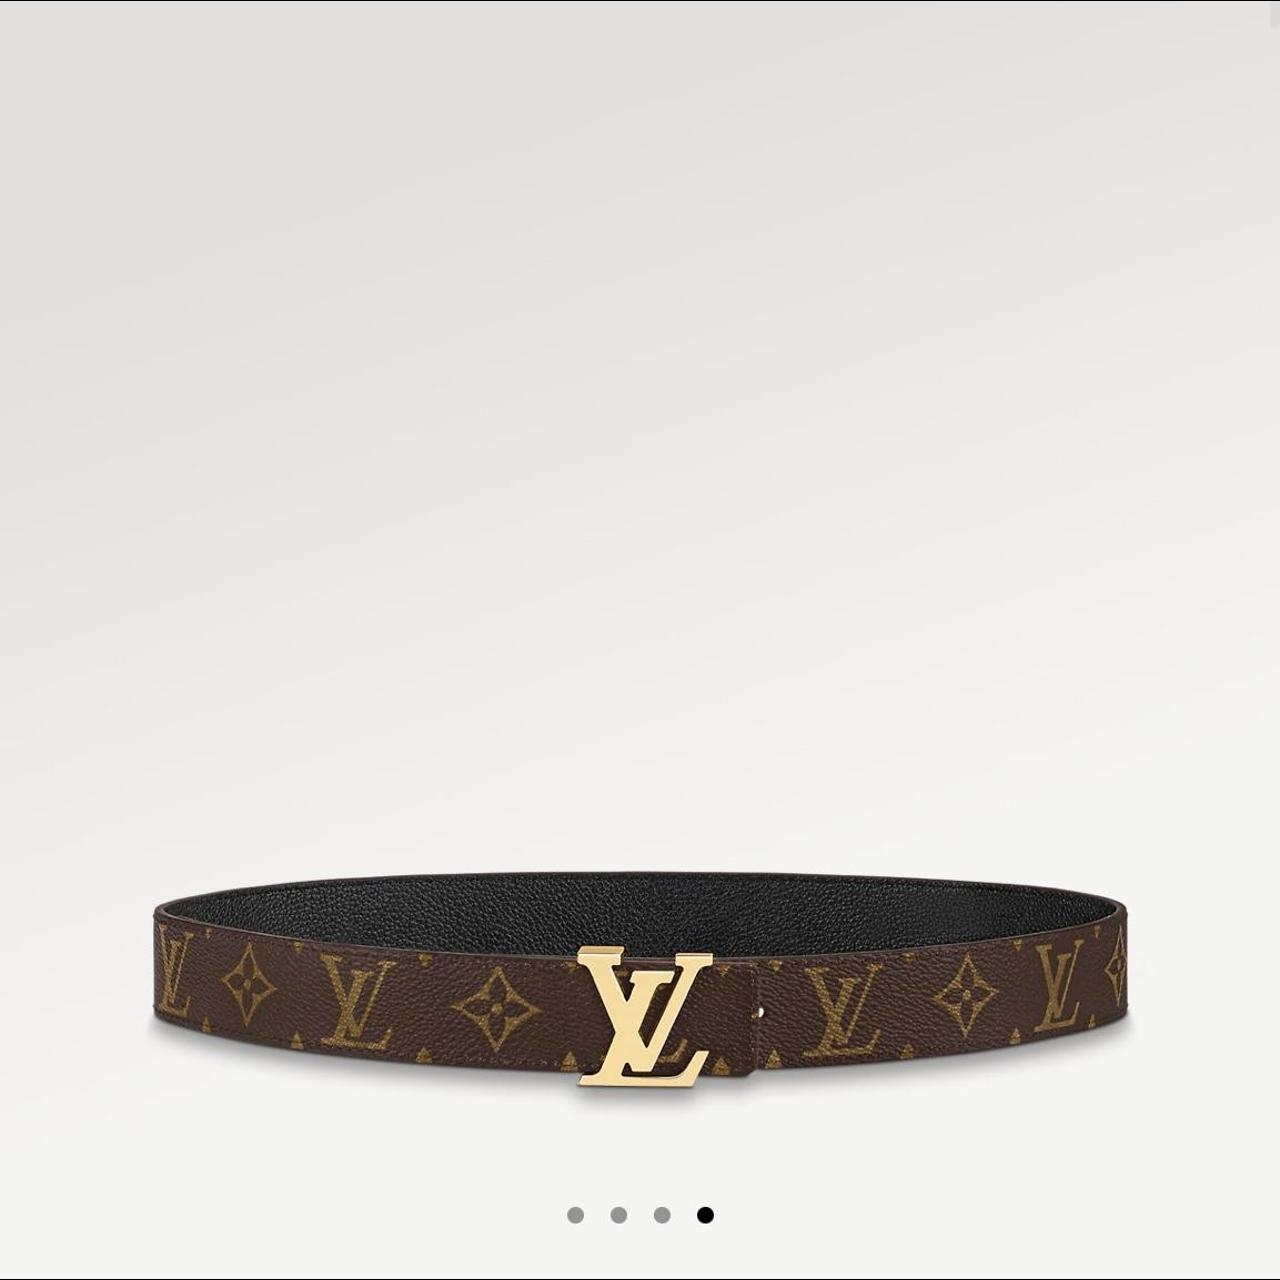 Louis Vuitton belt black & gold - Depop